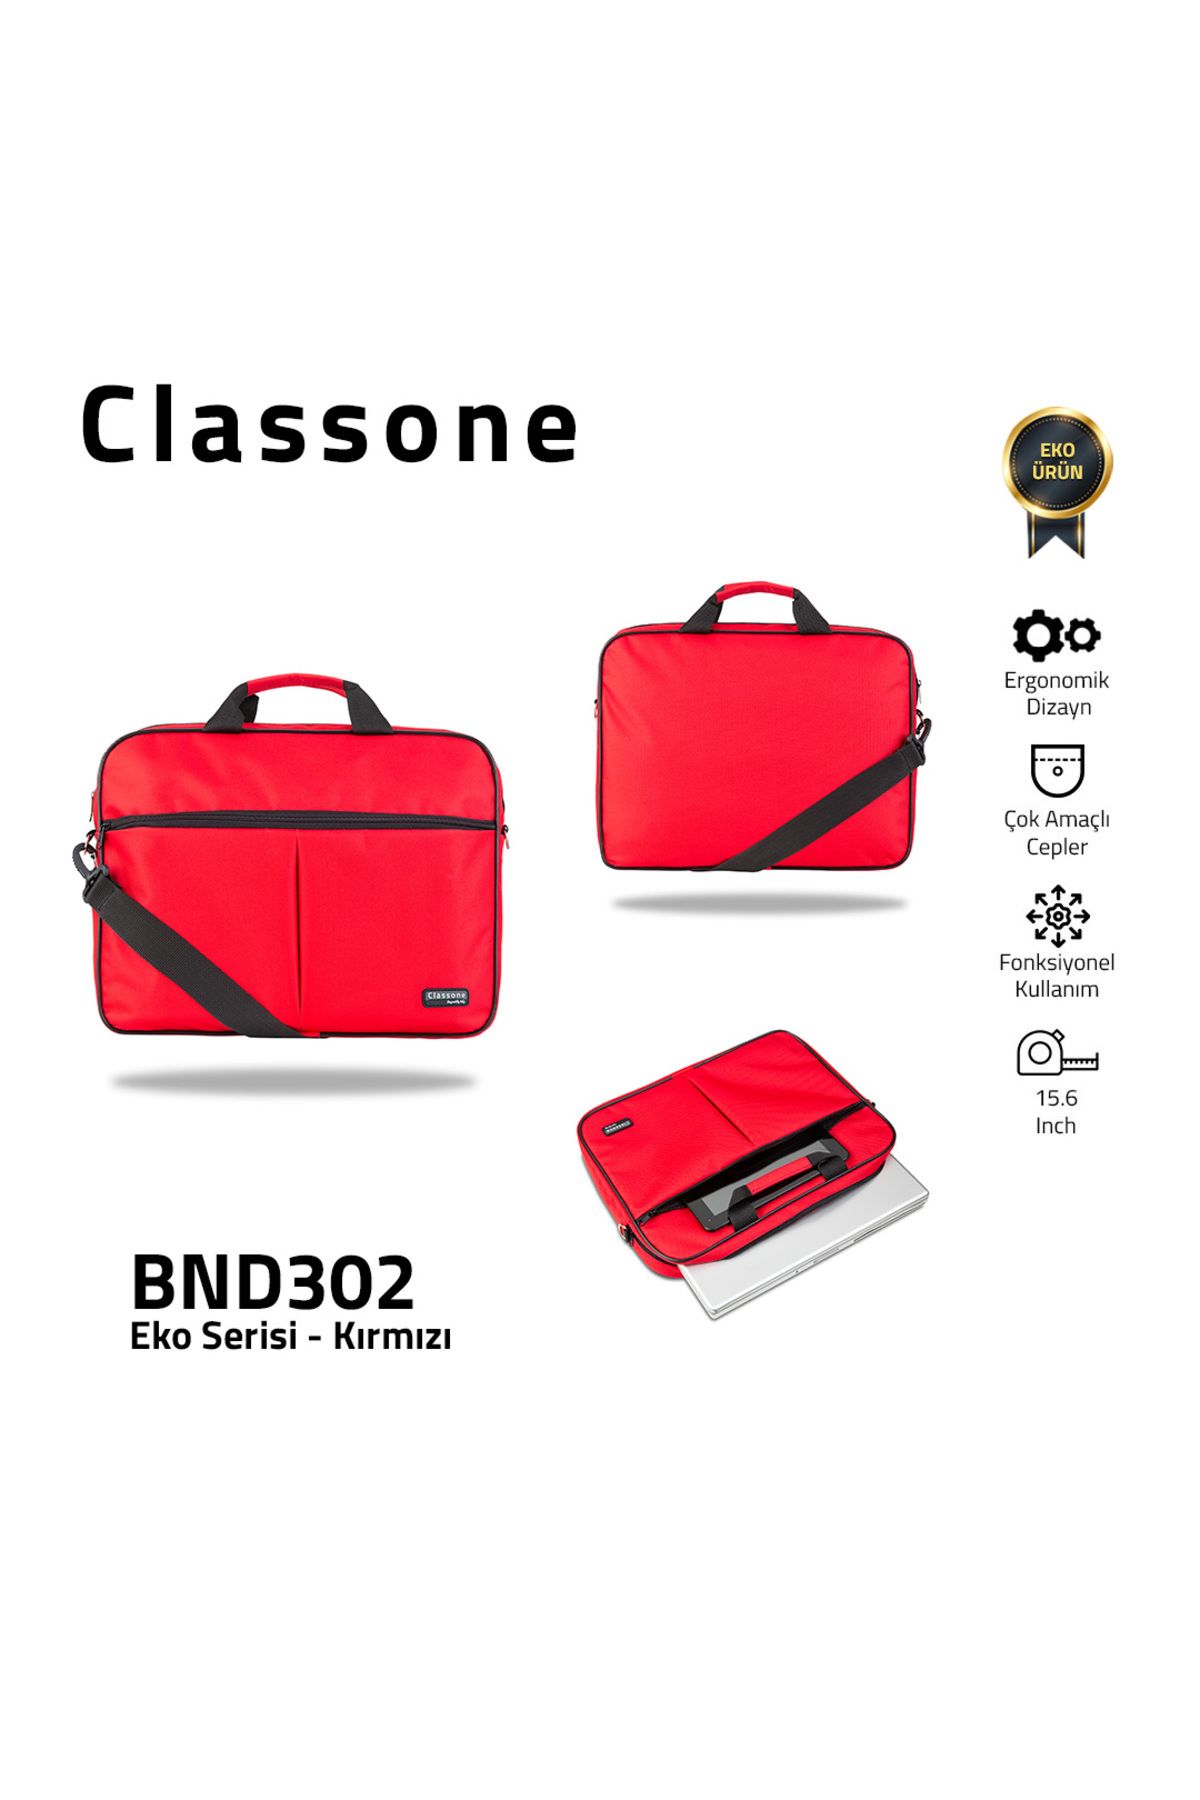 Classone BND302 Eko Serisi -Kırmızı